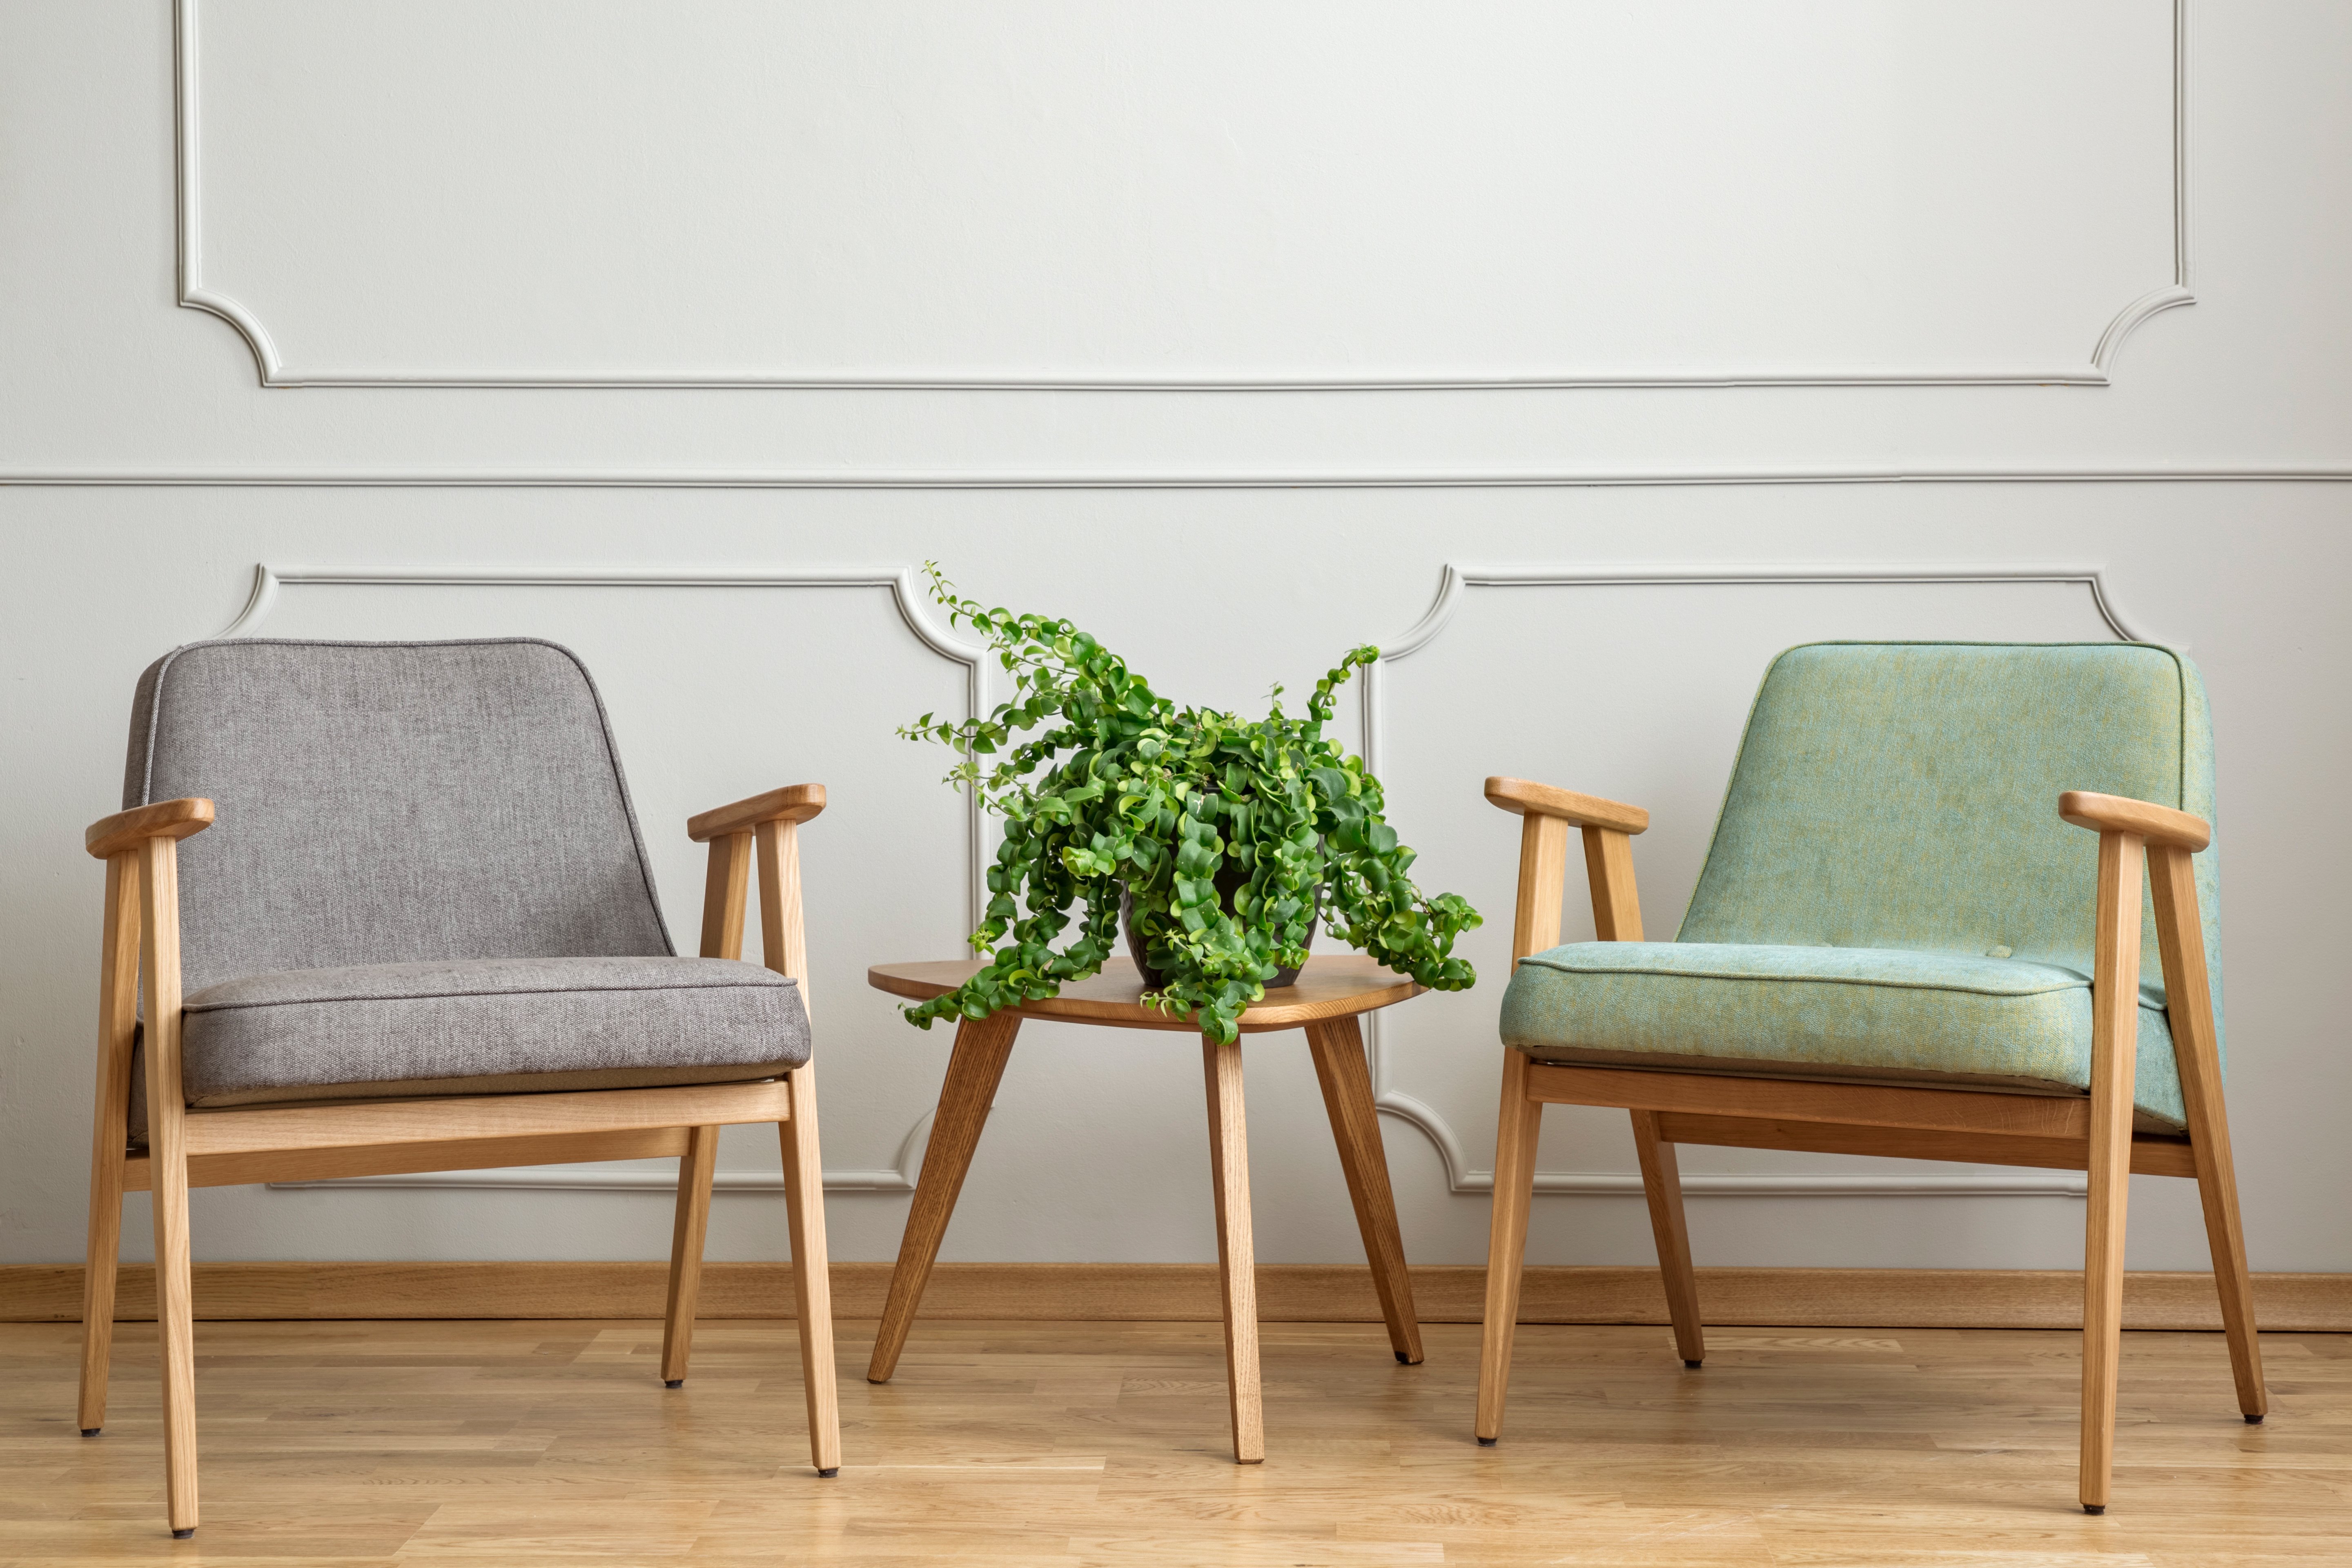 Zwei Sessel stehen an einer Wand. Zwischen den Sesseln steht ein Tisch mit einer Pflanze. Die Sessel haben Armlehnen. 